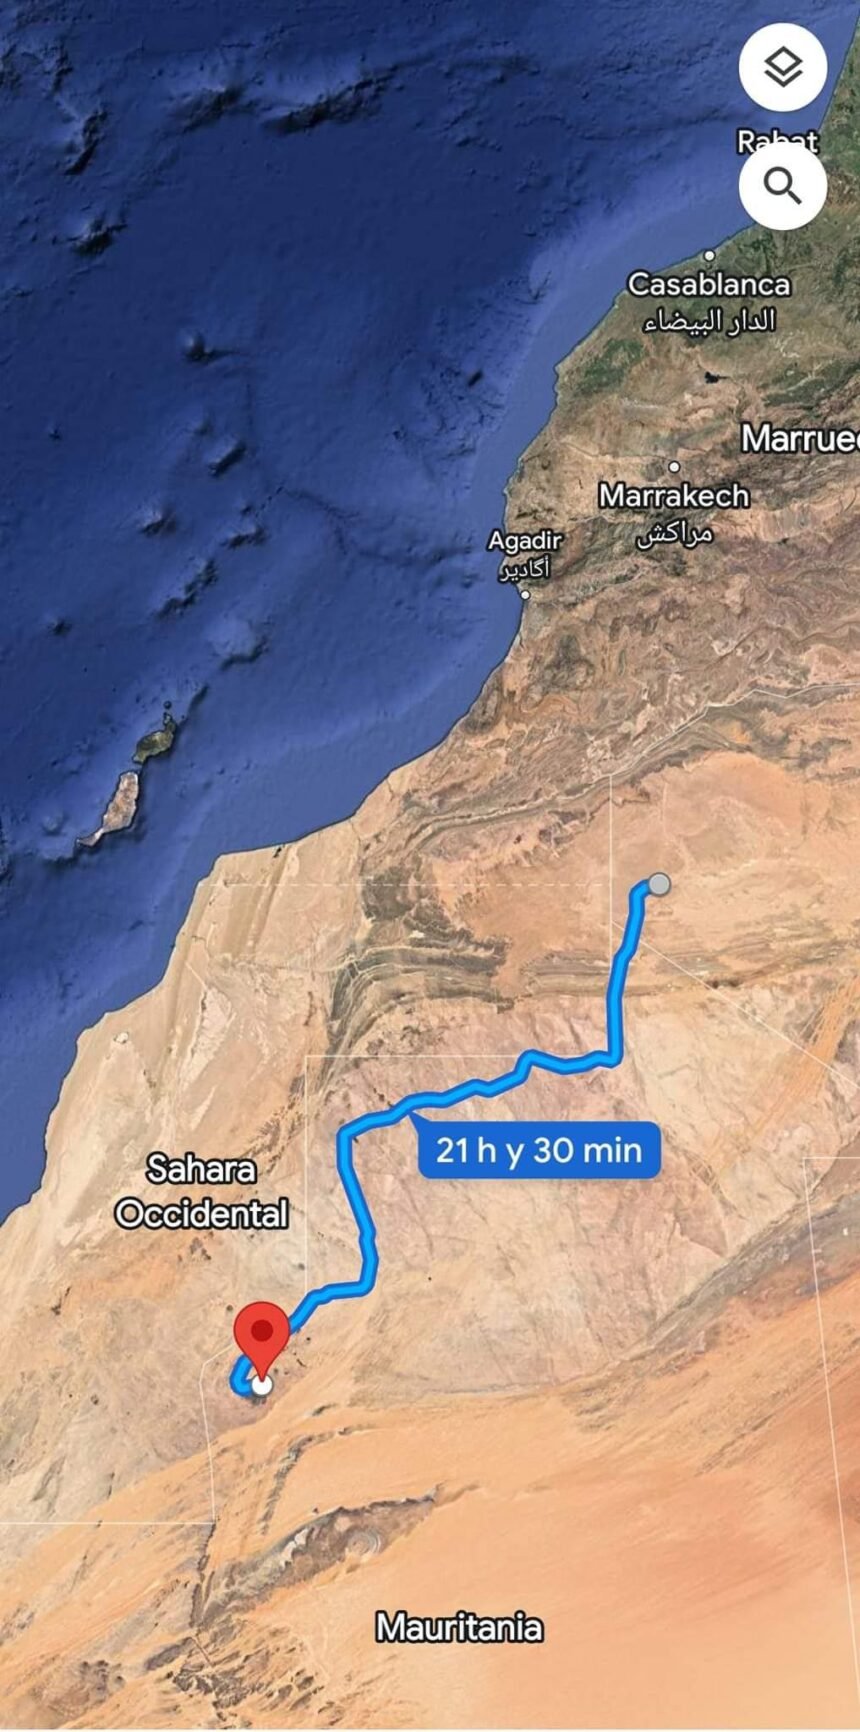 Reina la confusión ante la falta de confirmación oficial del ataque marroquí a un convoy argelino